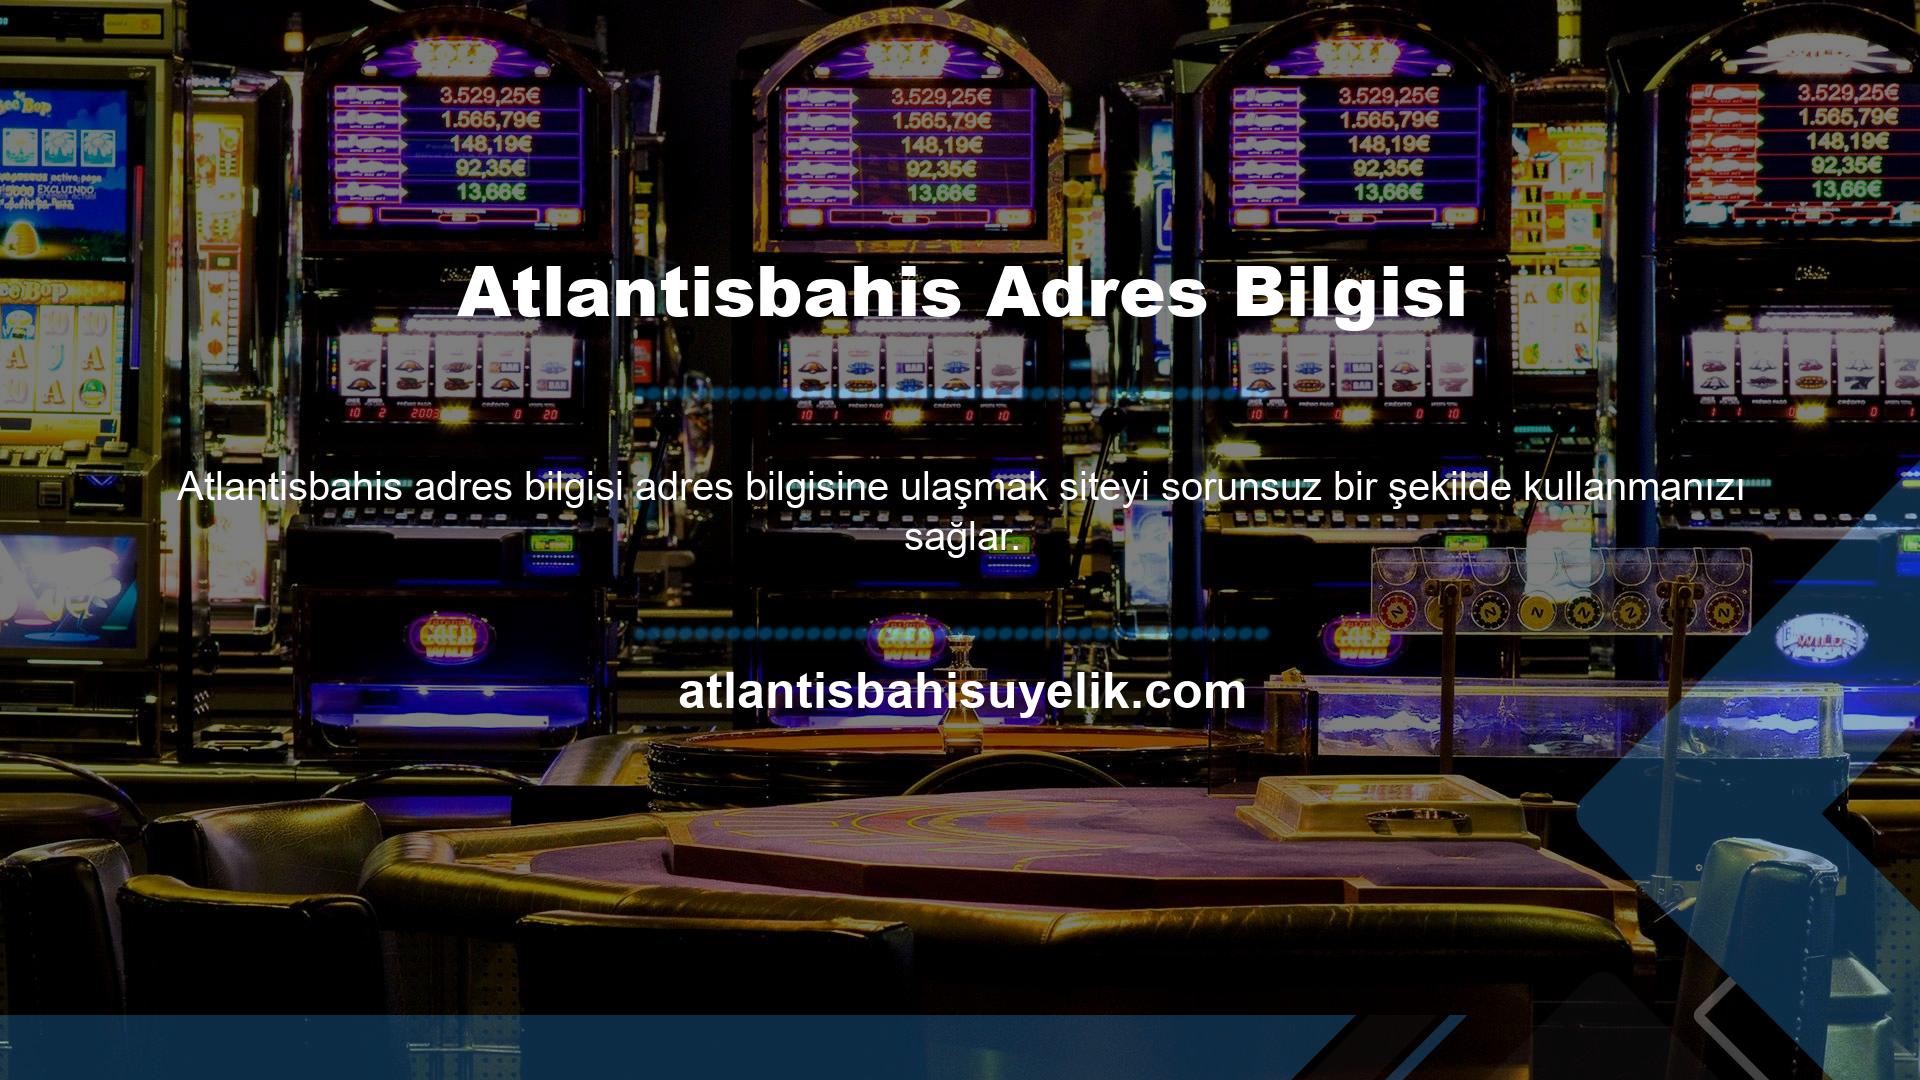 Yeni Atlantisbahis giriş bilgileriniz için geçerli bir adres olmadan bahis sitesine giriş yapamazsınız